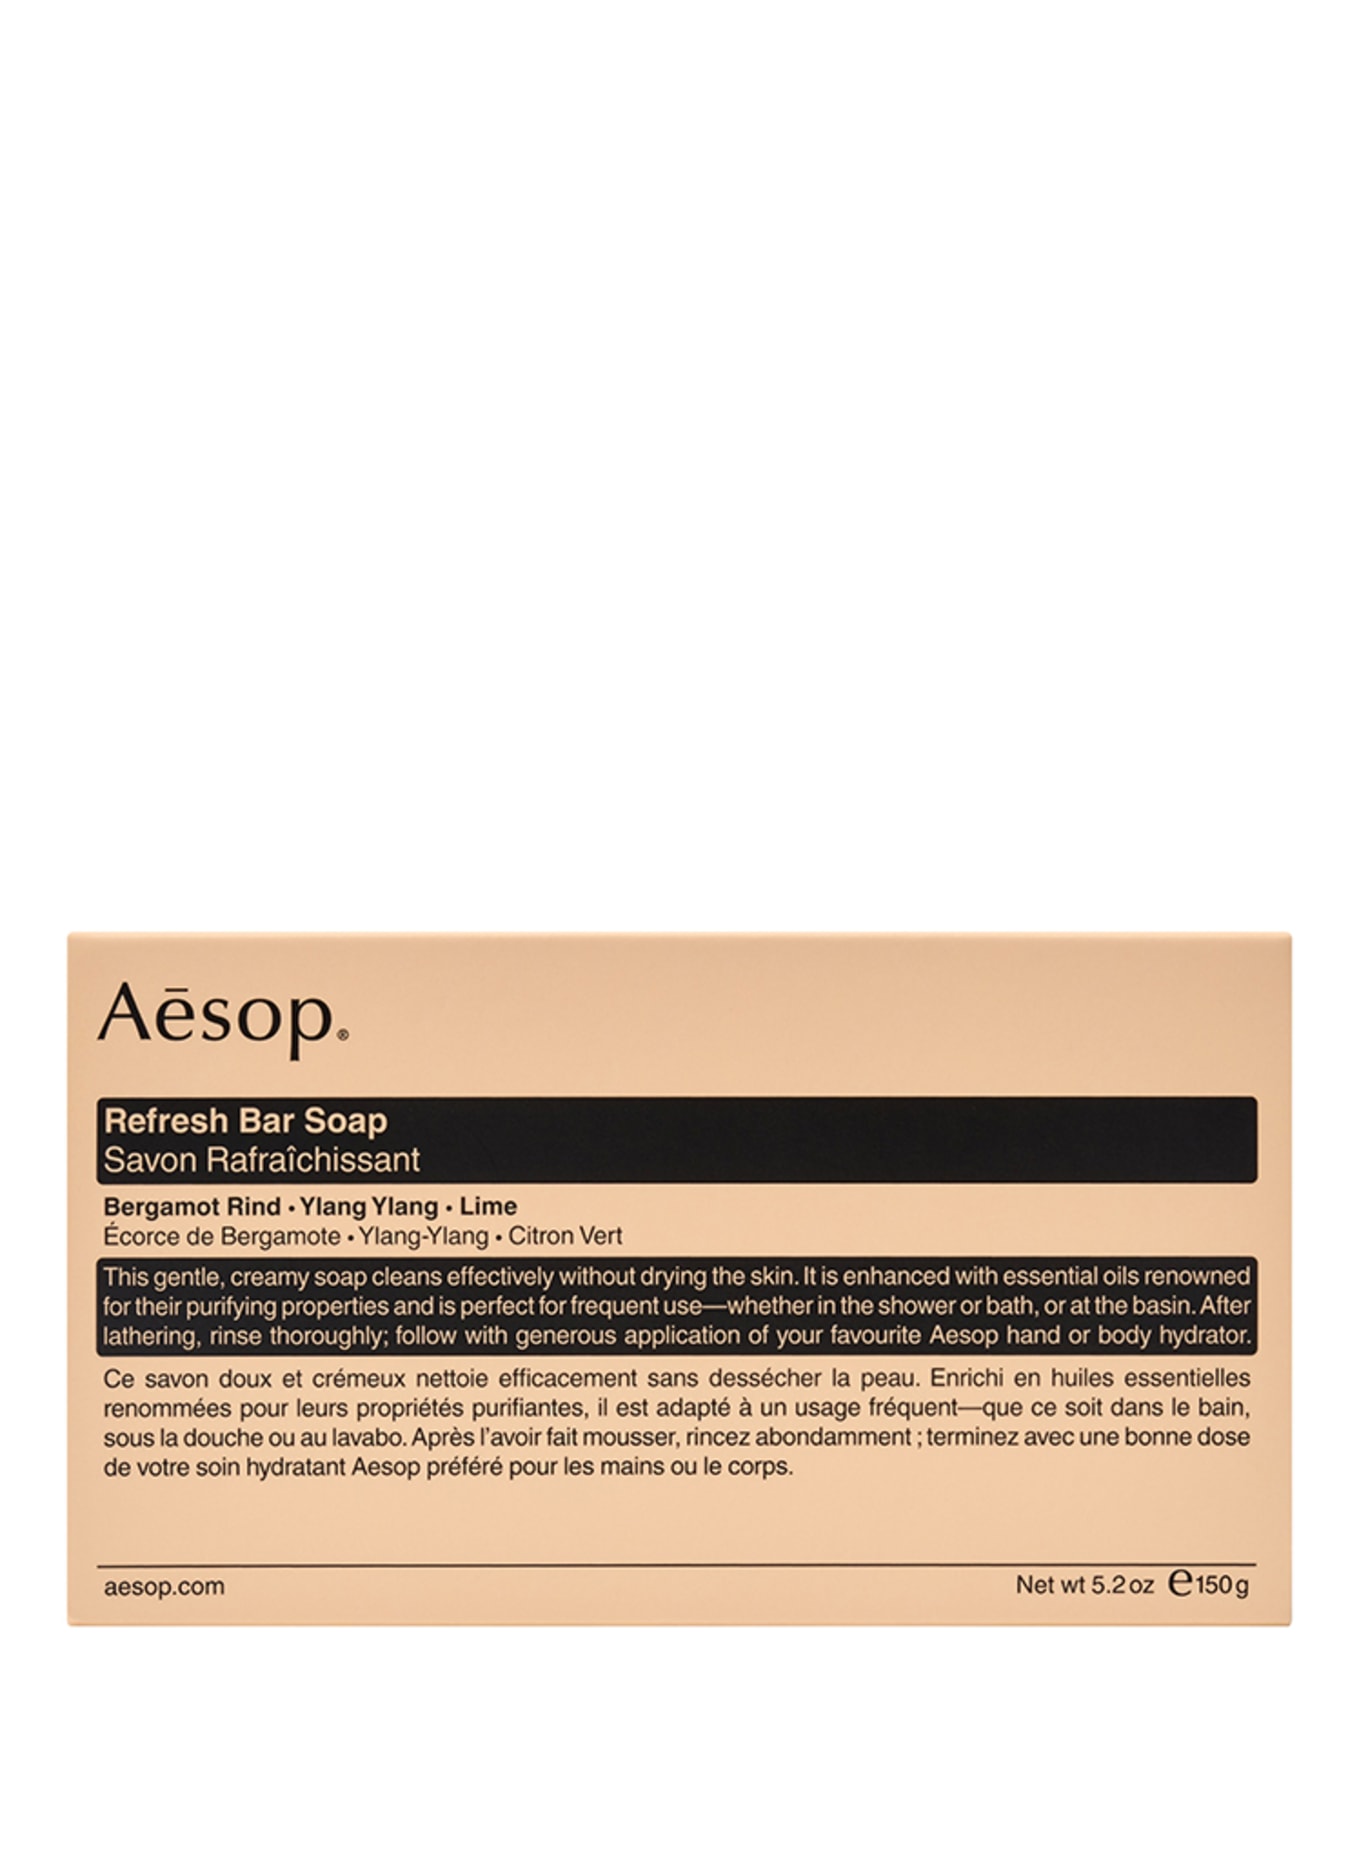 Aesop REFRESH BAR SOAP (Obrázek 2)